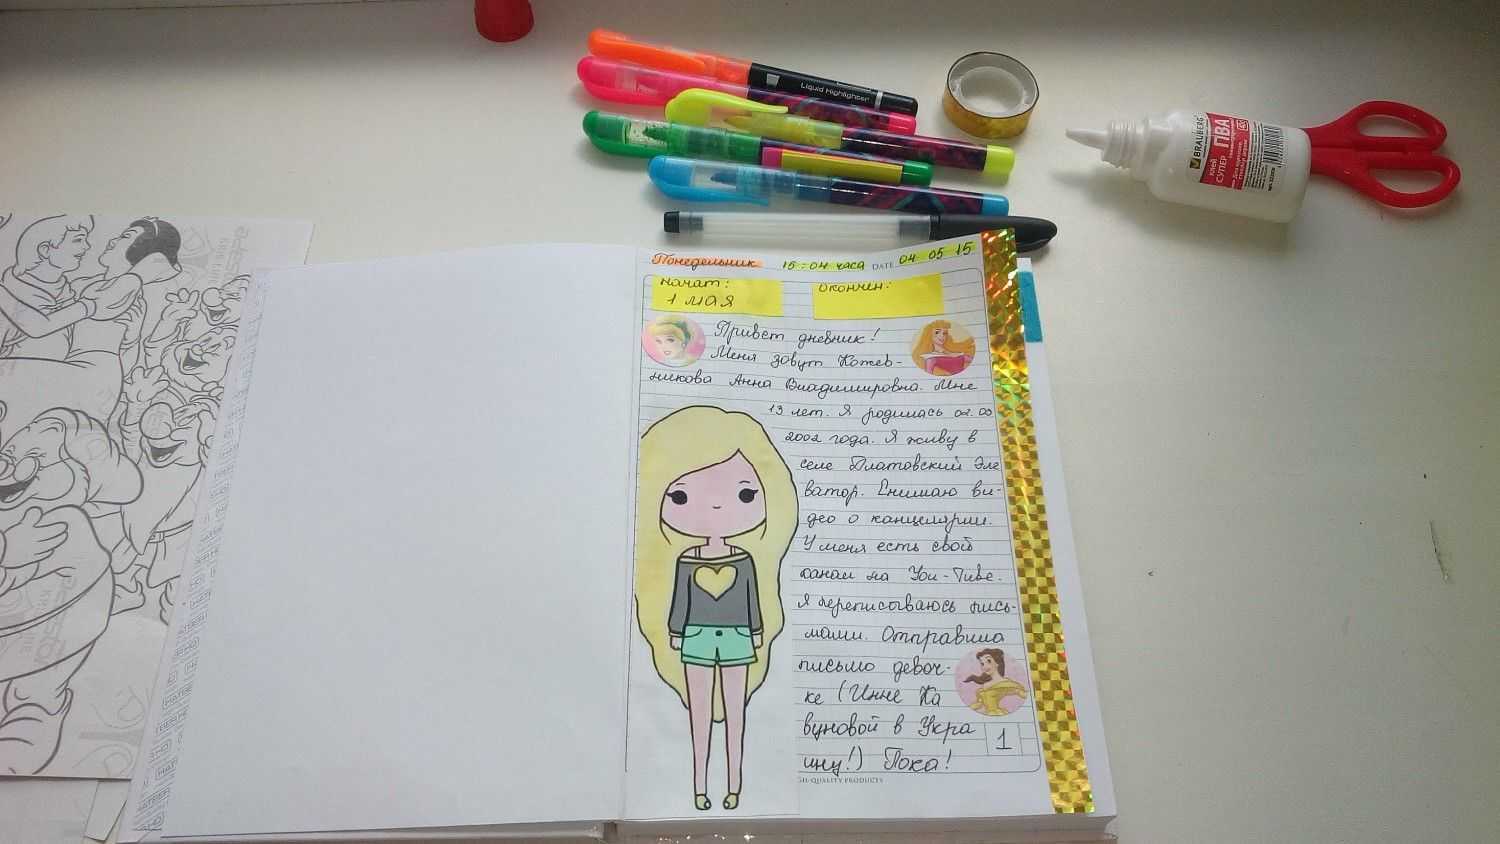 Идеи для лд (личного дневника девочки) - варианты оформления, подбор материалов, мастер-класс для создания своими руками (120 фото)